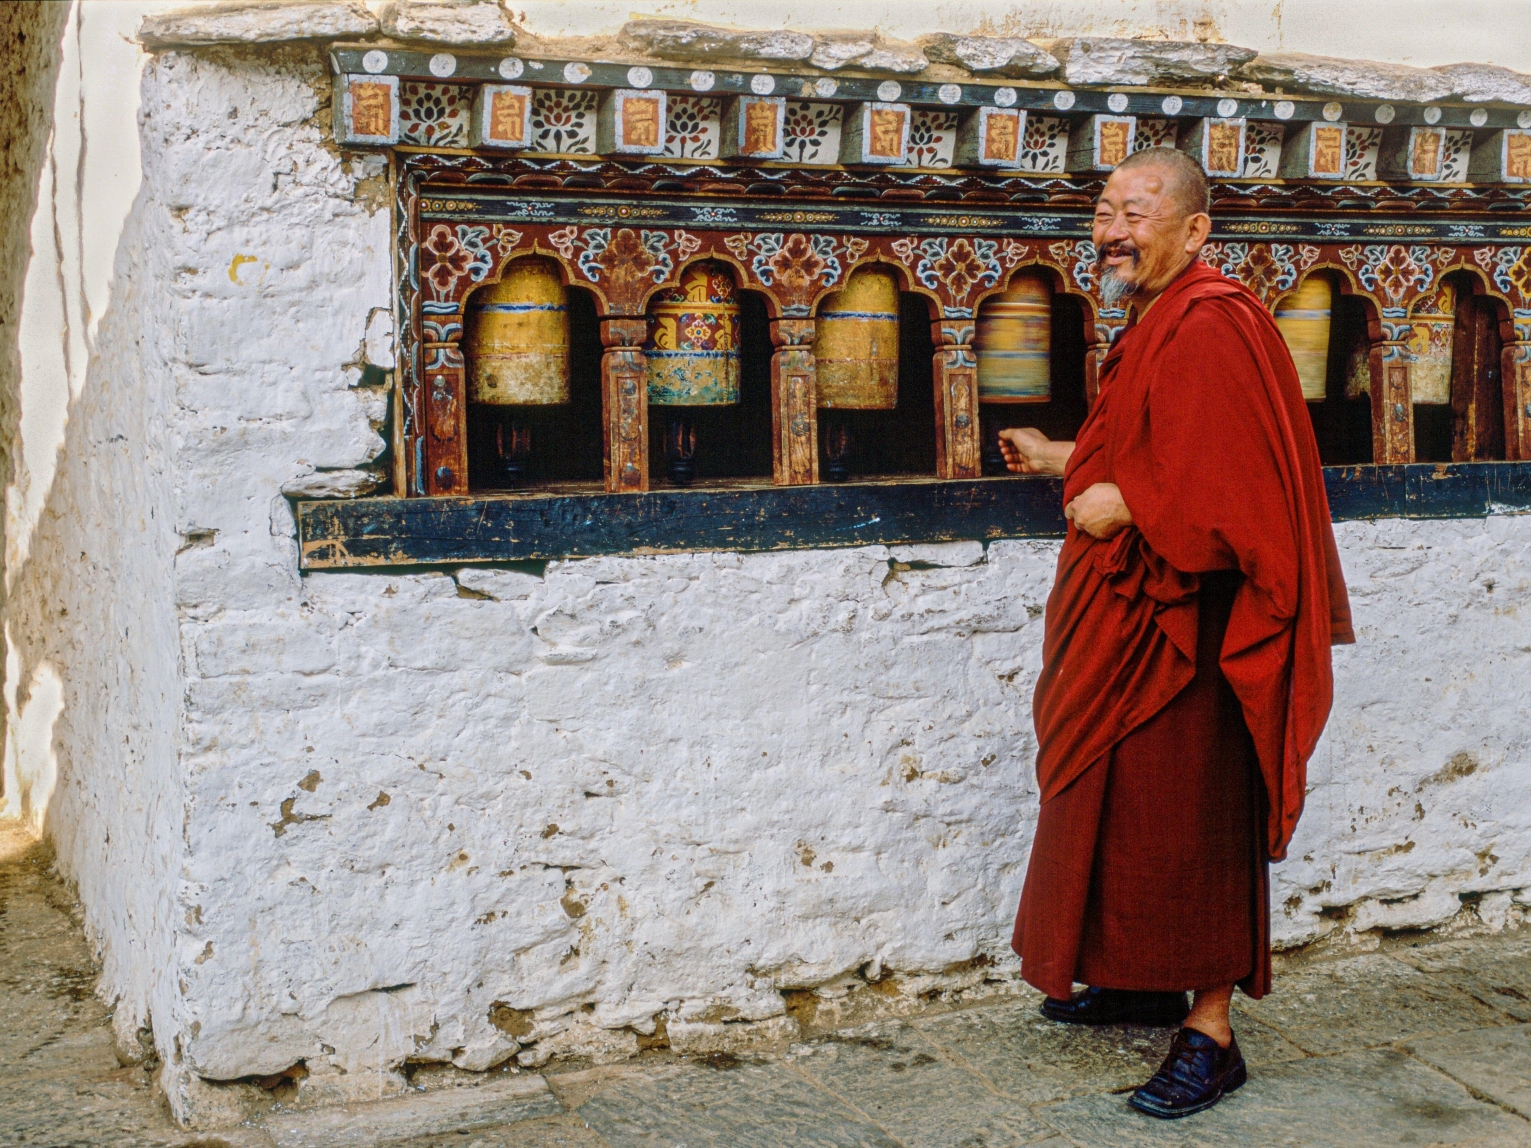 A Bhutanese monk spins a prayer wheel